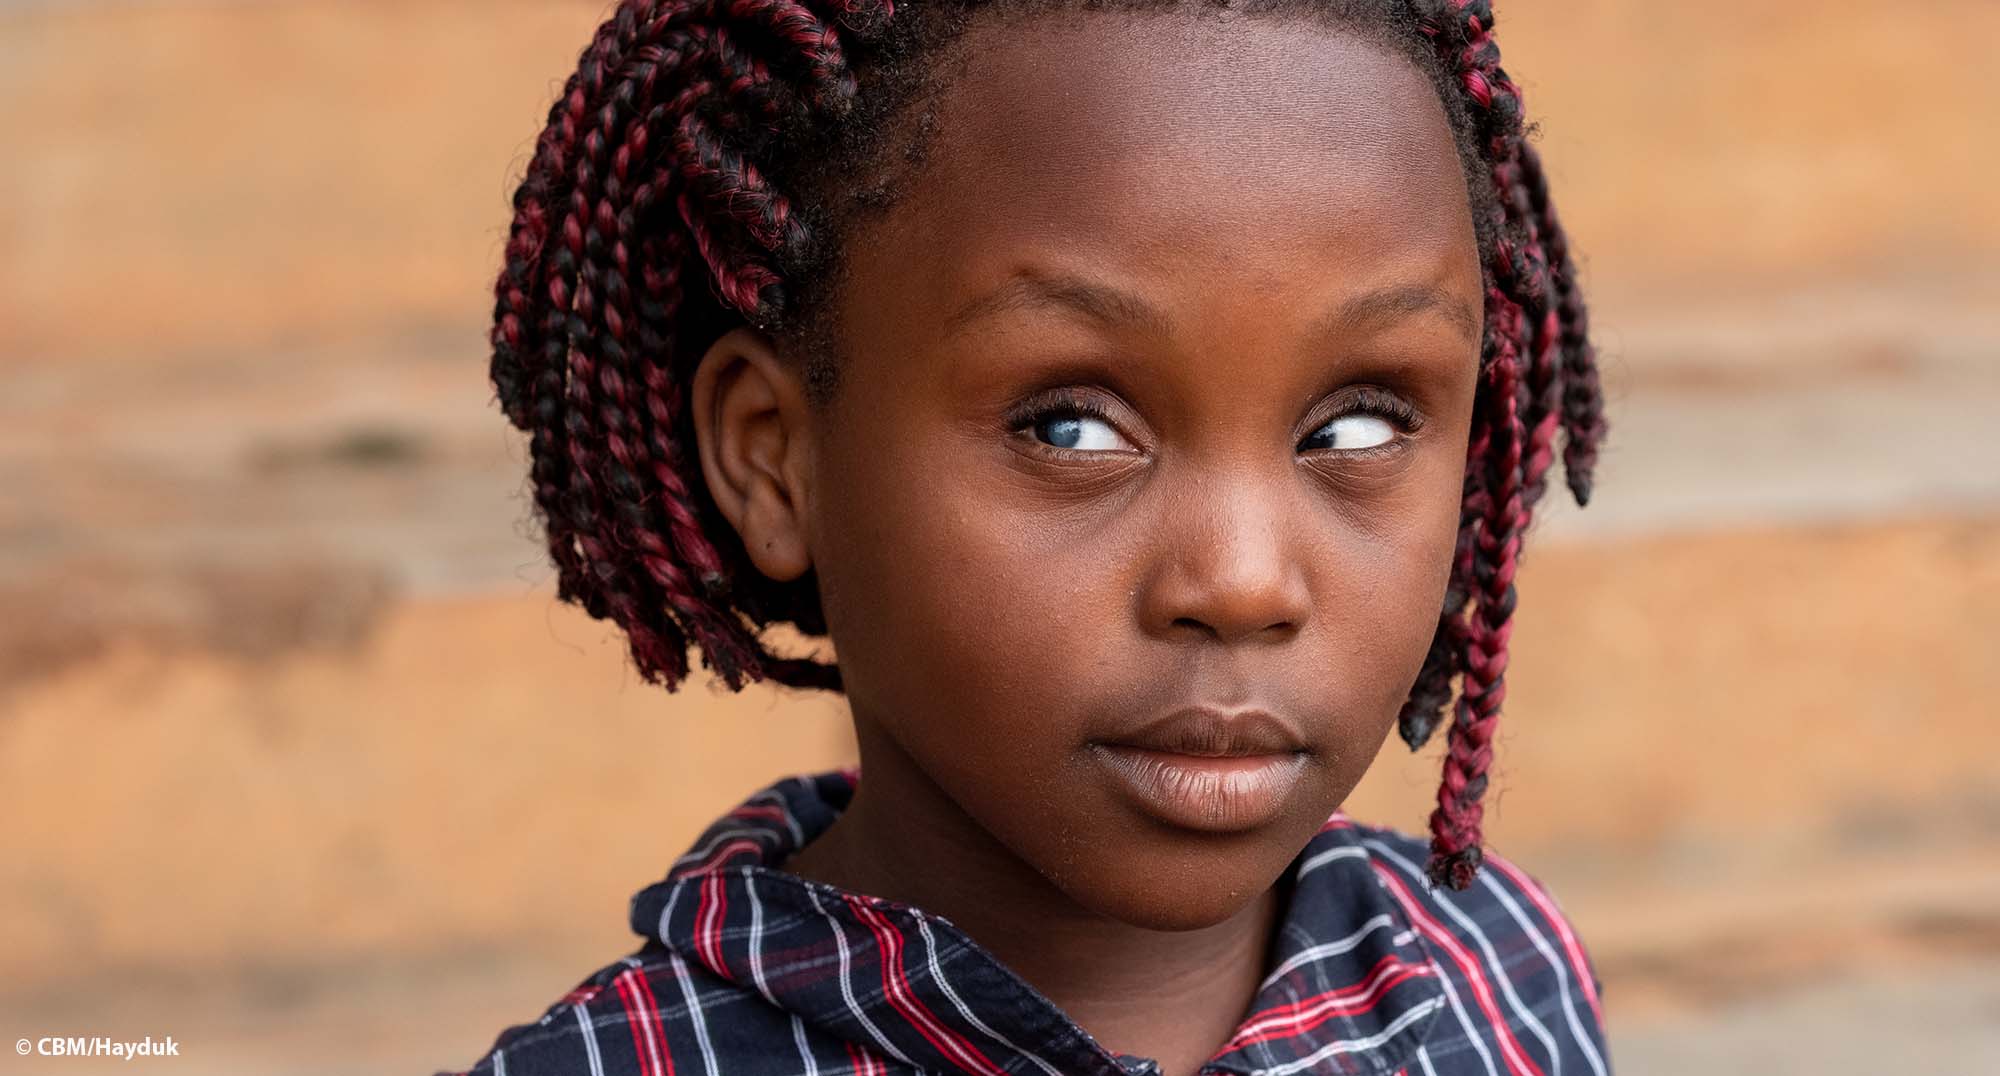 Porträt eines Mädchens aus Uganda, das im einen Auge Grauen Star und im anderen unwillkürliche Augenbewegungen hat.